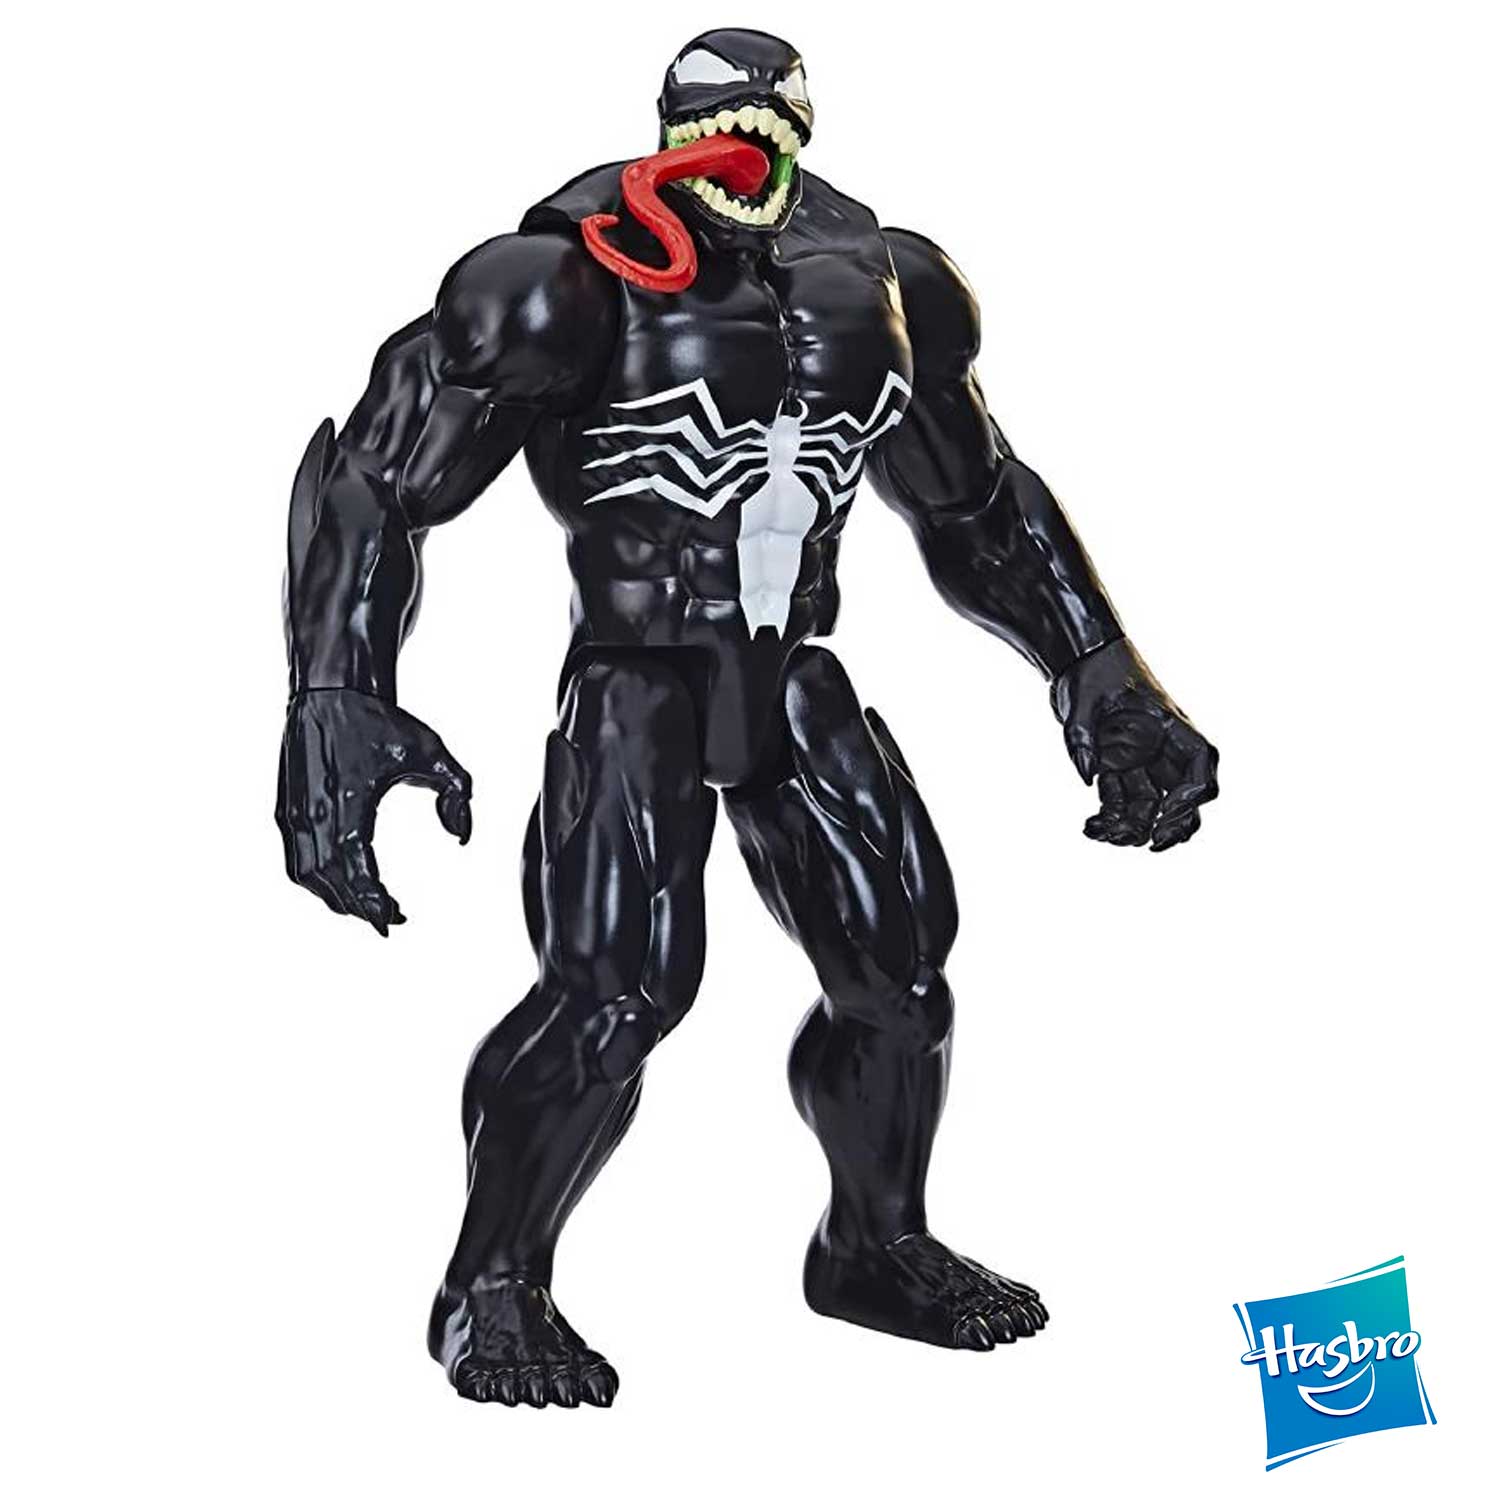 Hasbro - Spiderman Titan Deluxe Venom F49845L0